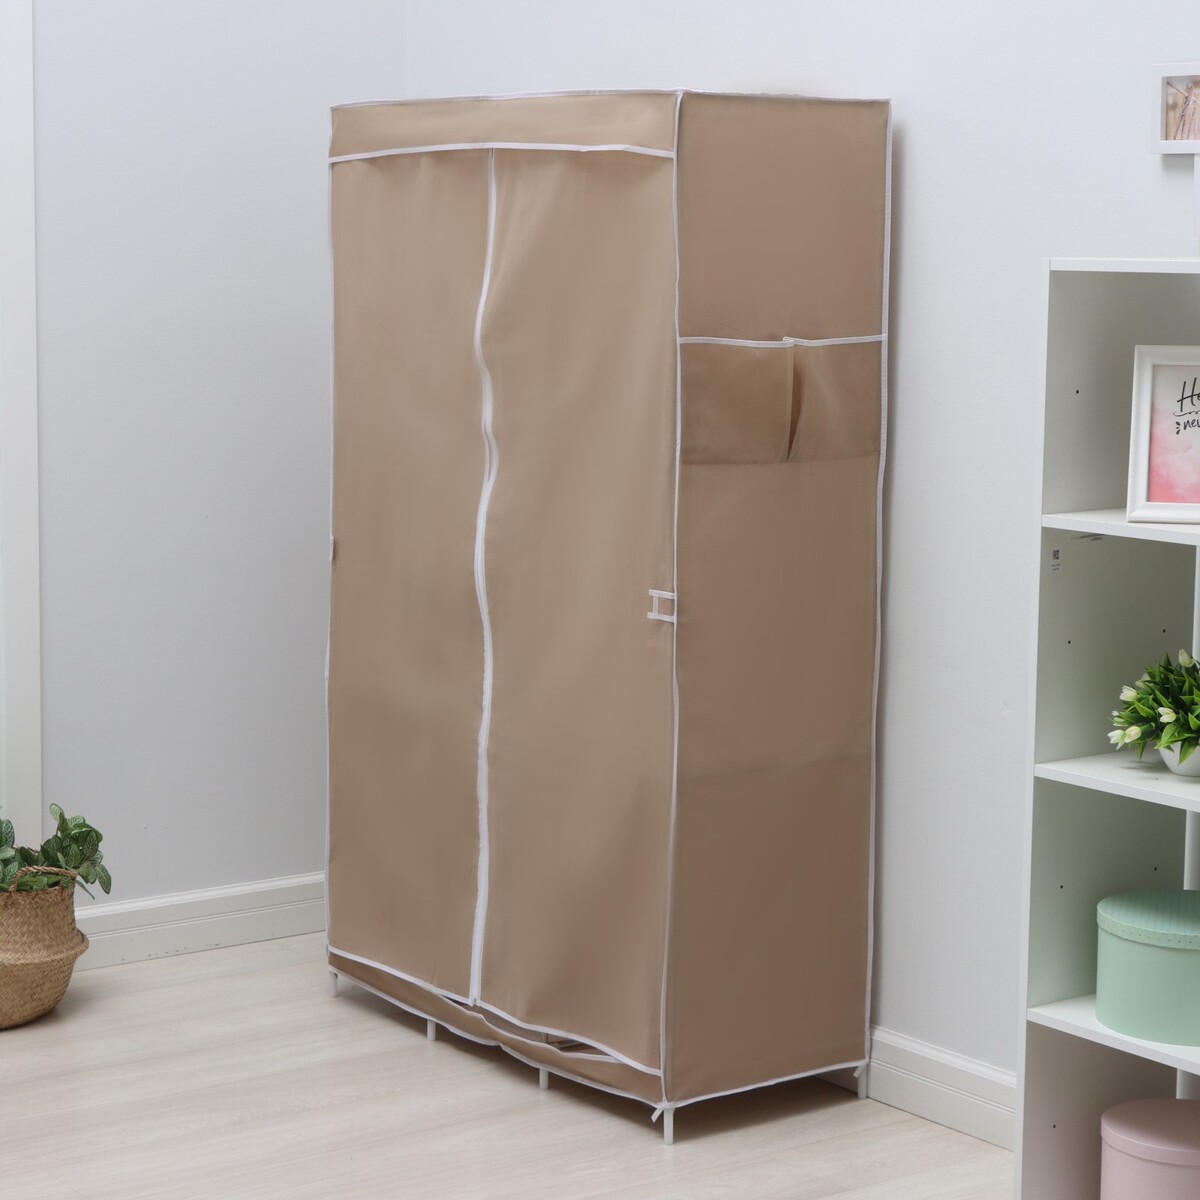 Шкаф тканевый каркасный, складной ladо́m, 103×45×165 см, цвет бежевый шкаф тканевый каркасный складной ladо́m 83×45×160 см серый